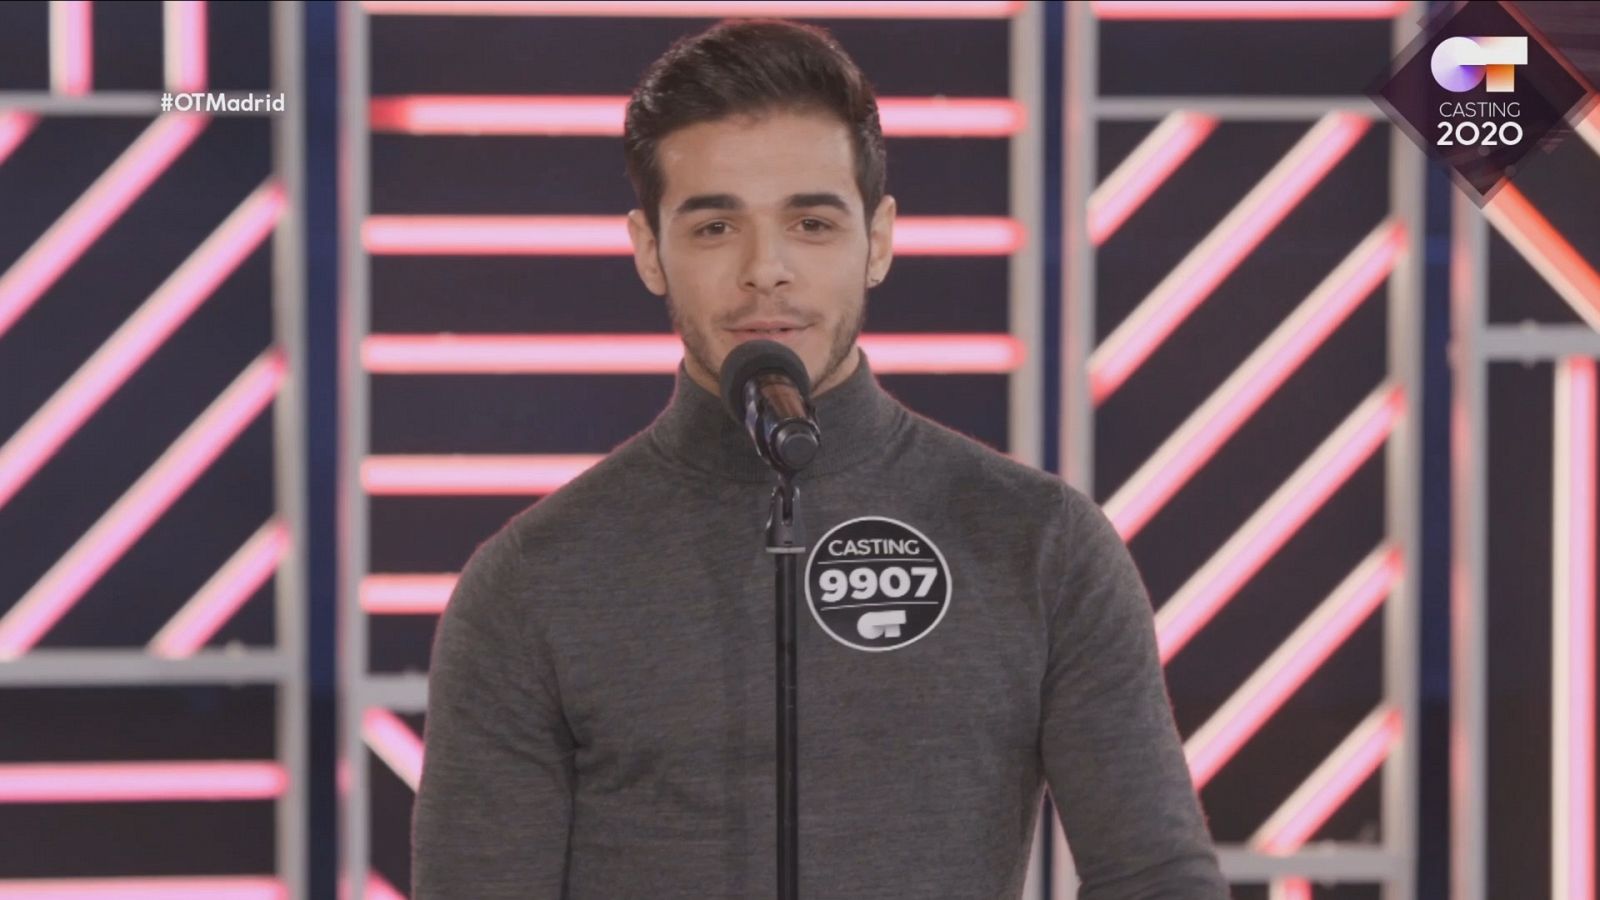 Pablo canta "Más" de Ricky Martin en la Fase 2 del casting OT 2020 en Madrid